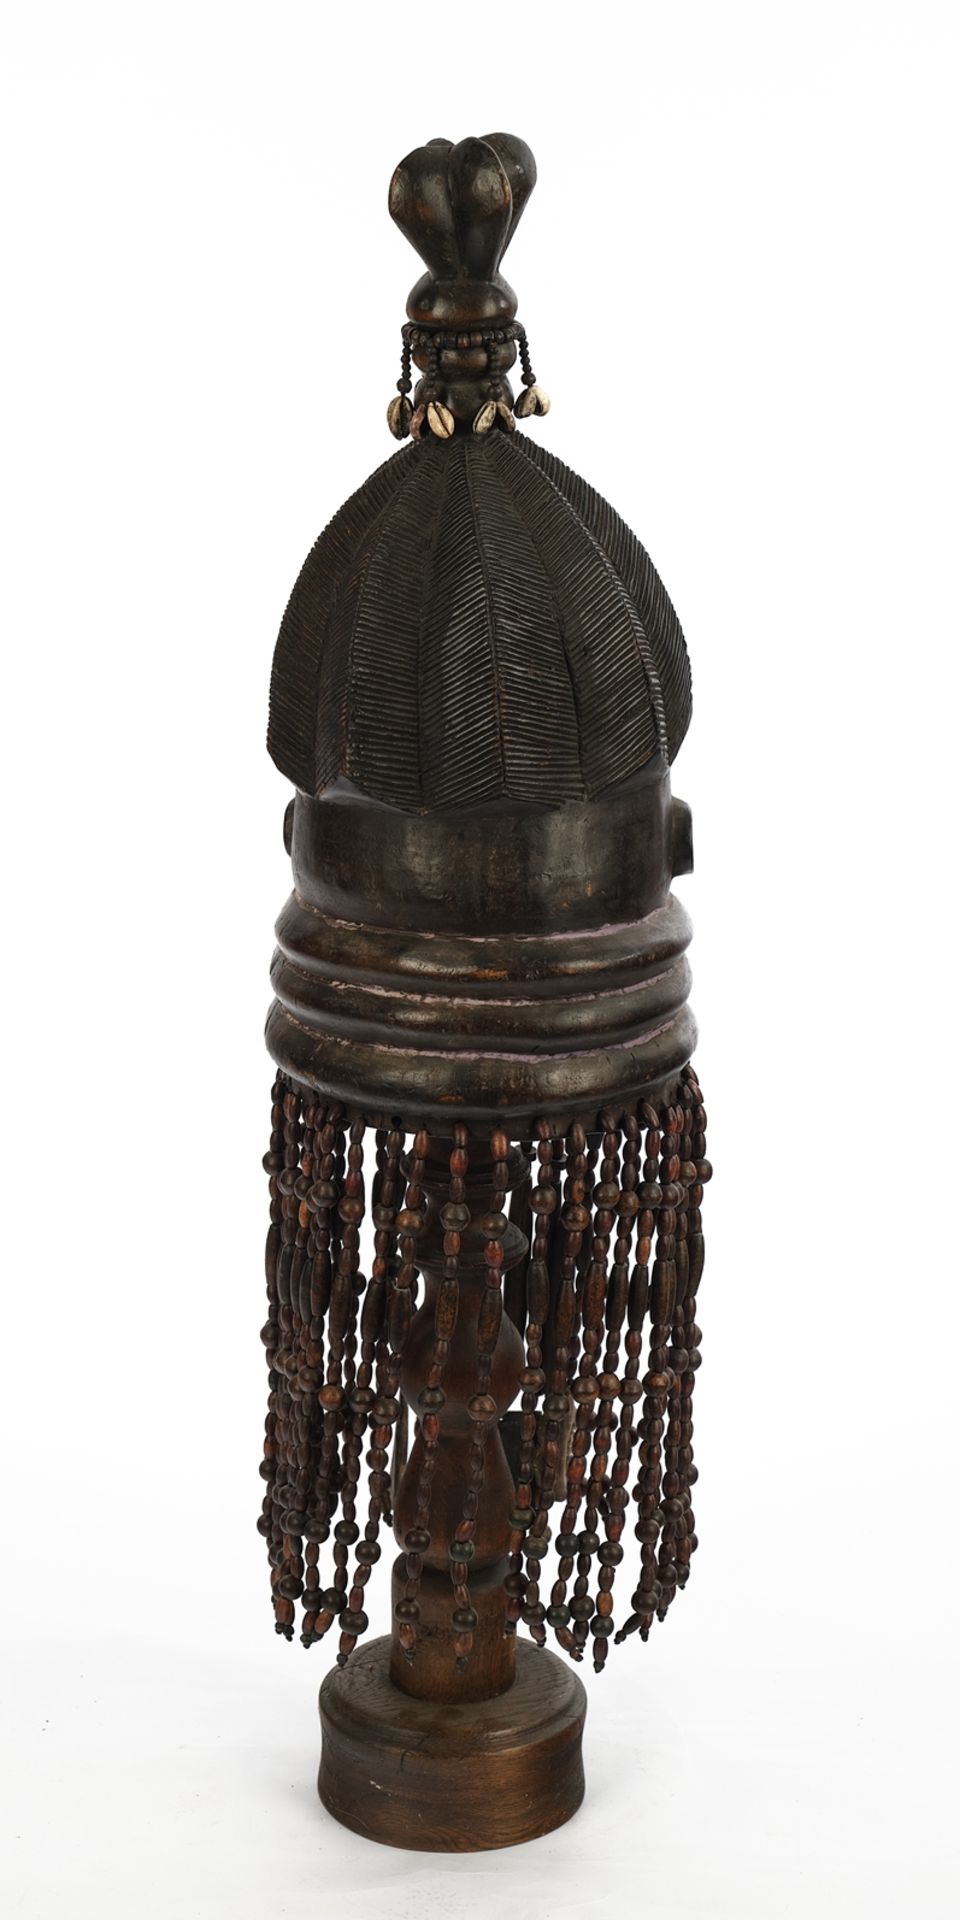 Helm-Stülpmaske, weiblich, Sande, Mende, Sierra Leone, Afrika, Holz, schwarzbraun patiniert, Gesich - Bild 2 aus 2